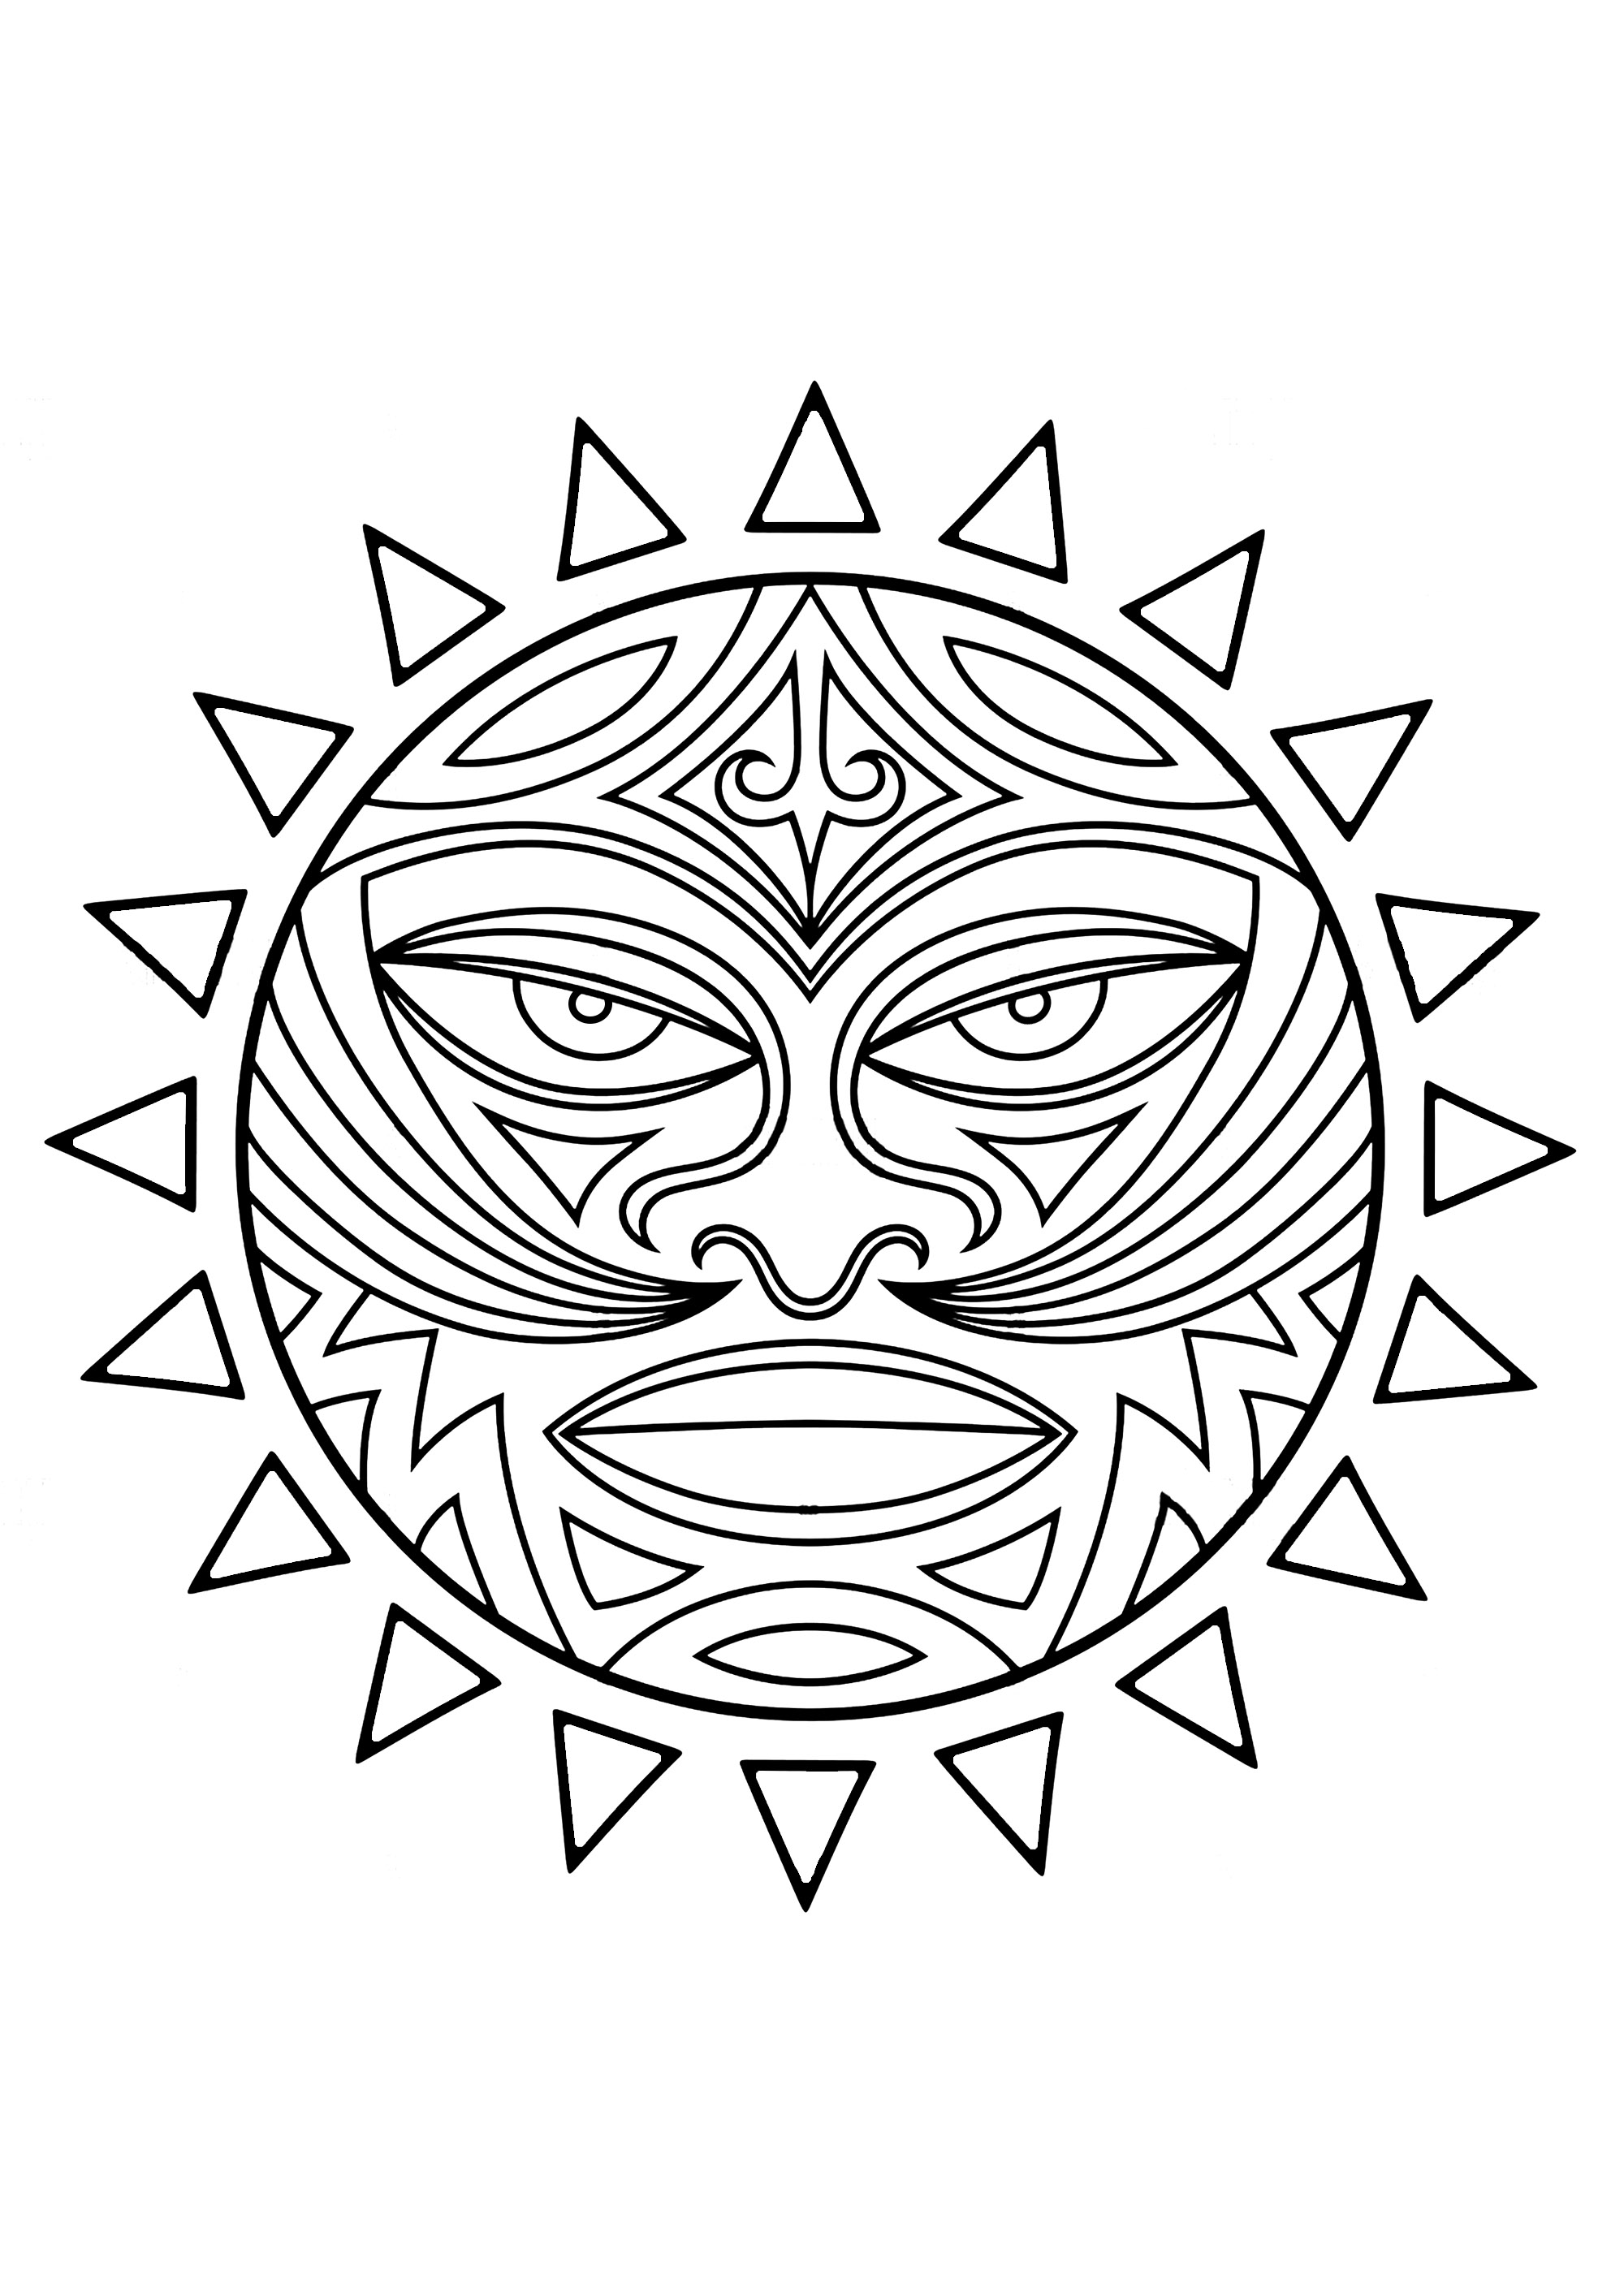 Tiki: símbolo maorí / polinesio. Mitad hombre, mitad dios, el Tiki simboliza una figura mítica que, según las costumbres y creencias de los pueblos polinesios, dio a luz a los seres humanos. En el pasado, los polinesios los veneraban y temían. Esta representación en forma de rostro dentro de un círculo puede ser objeto de un tatuaje maorí.